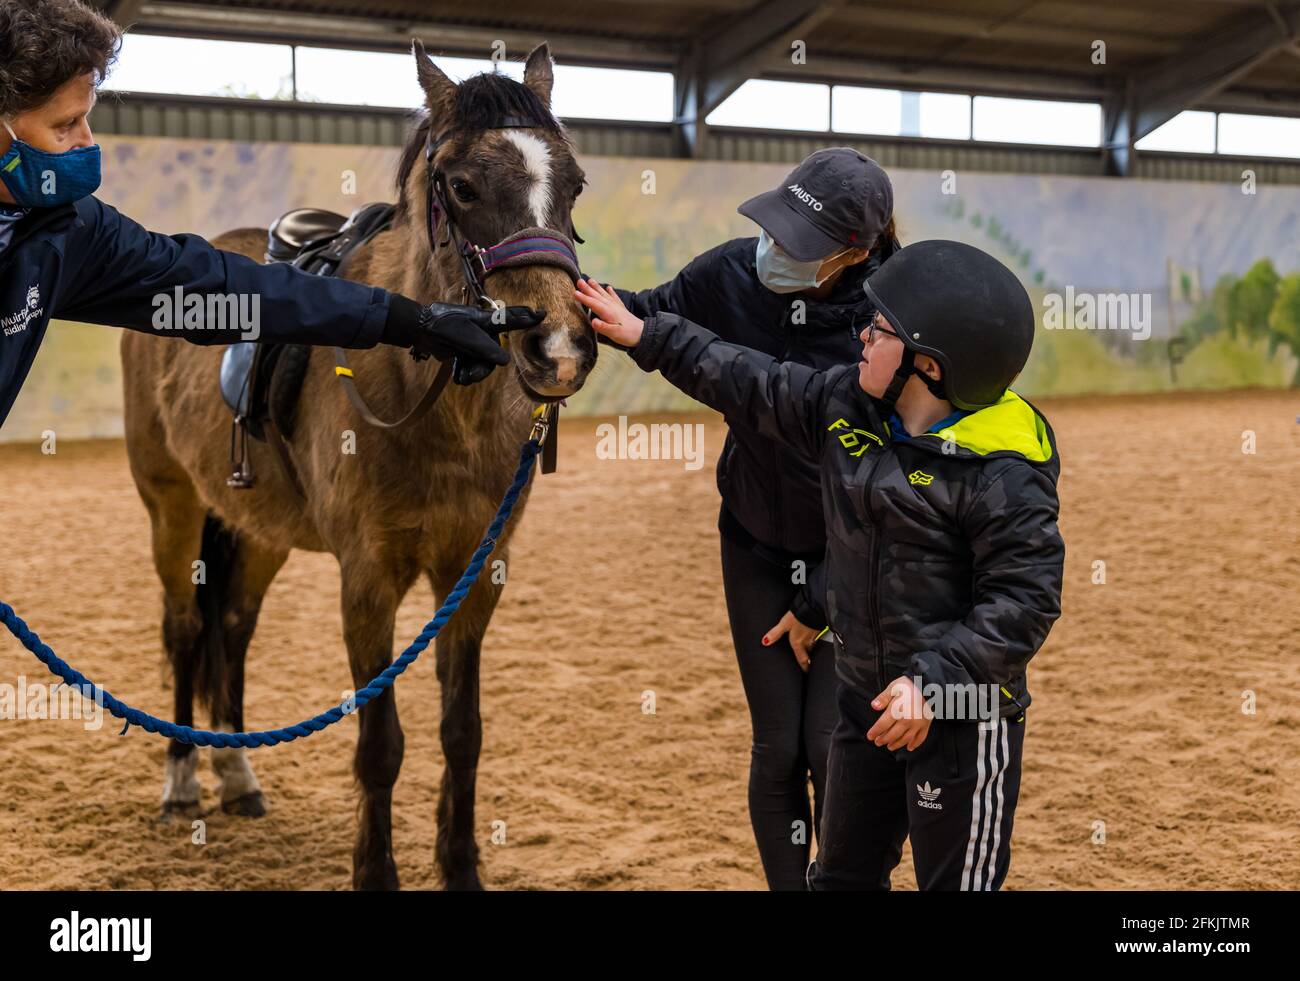 Garçon avec le syndrome de Down patrouiller le cheval avec sa mère portant un masque facial à Riding for Disabled, Muirfield Riding Therapy, East Lothian, Écosse, Royaume-Uni Banque D'Images